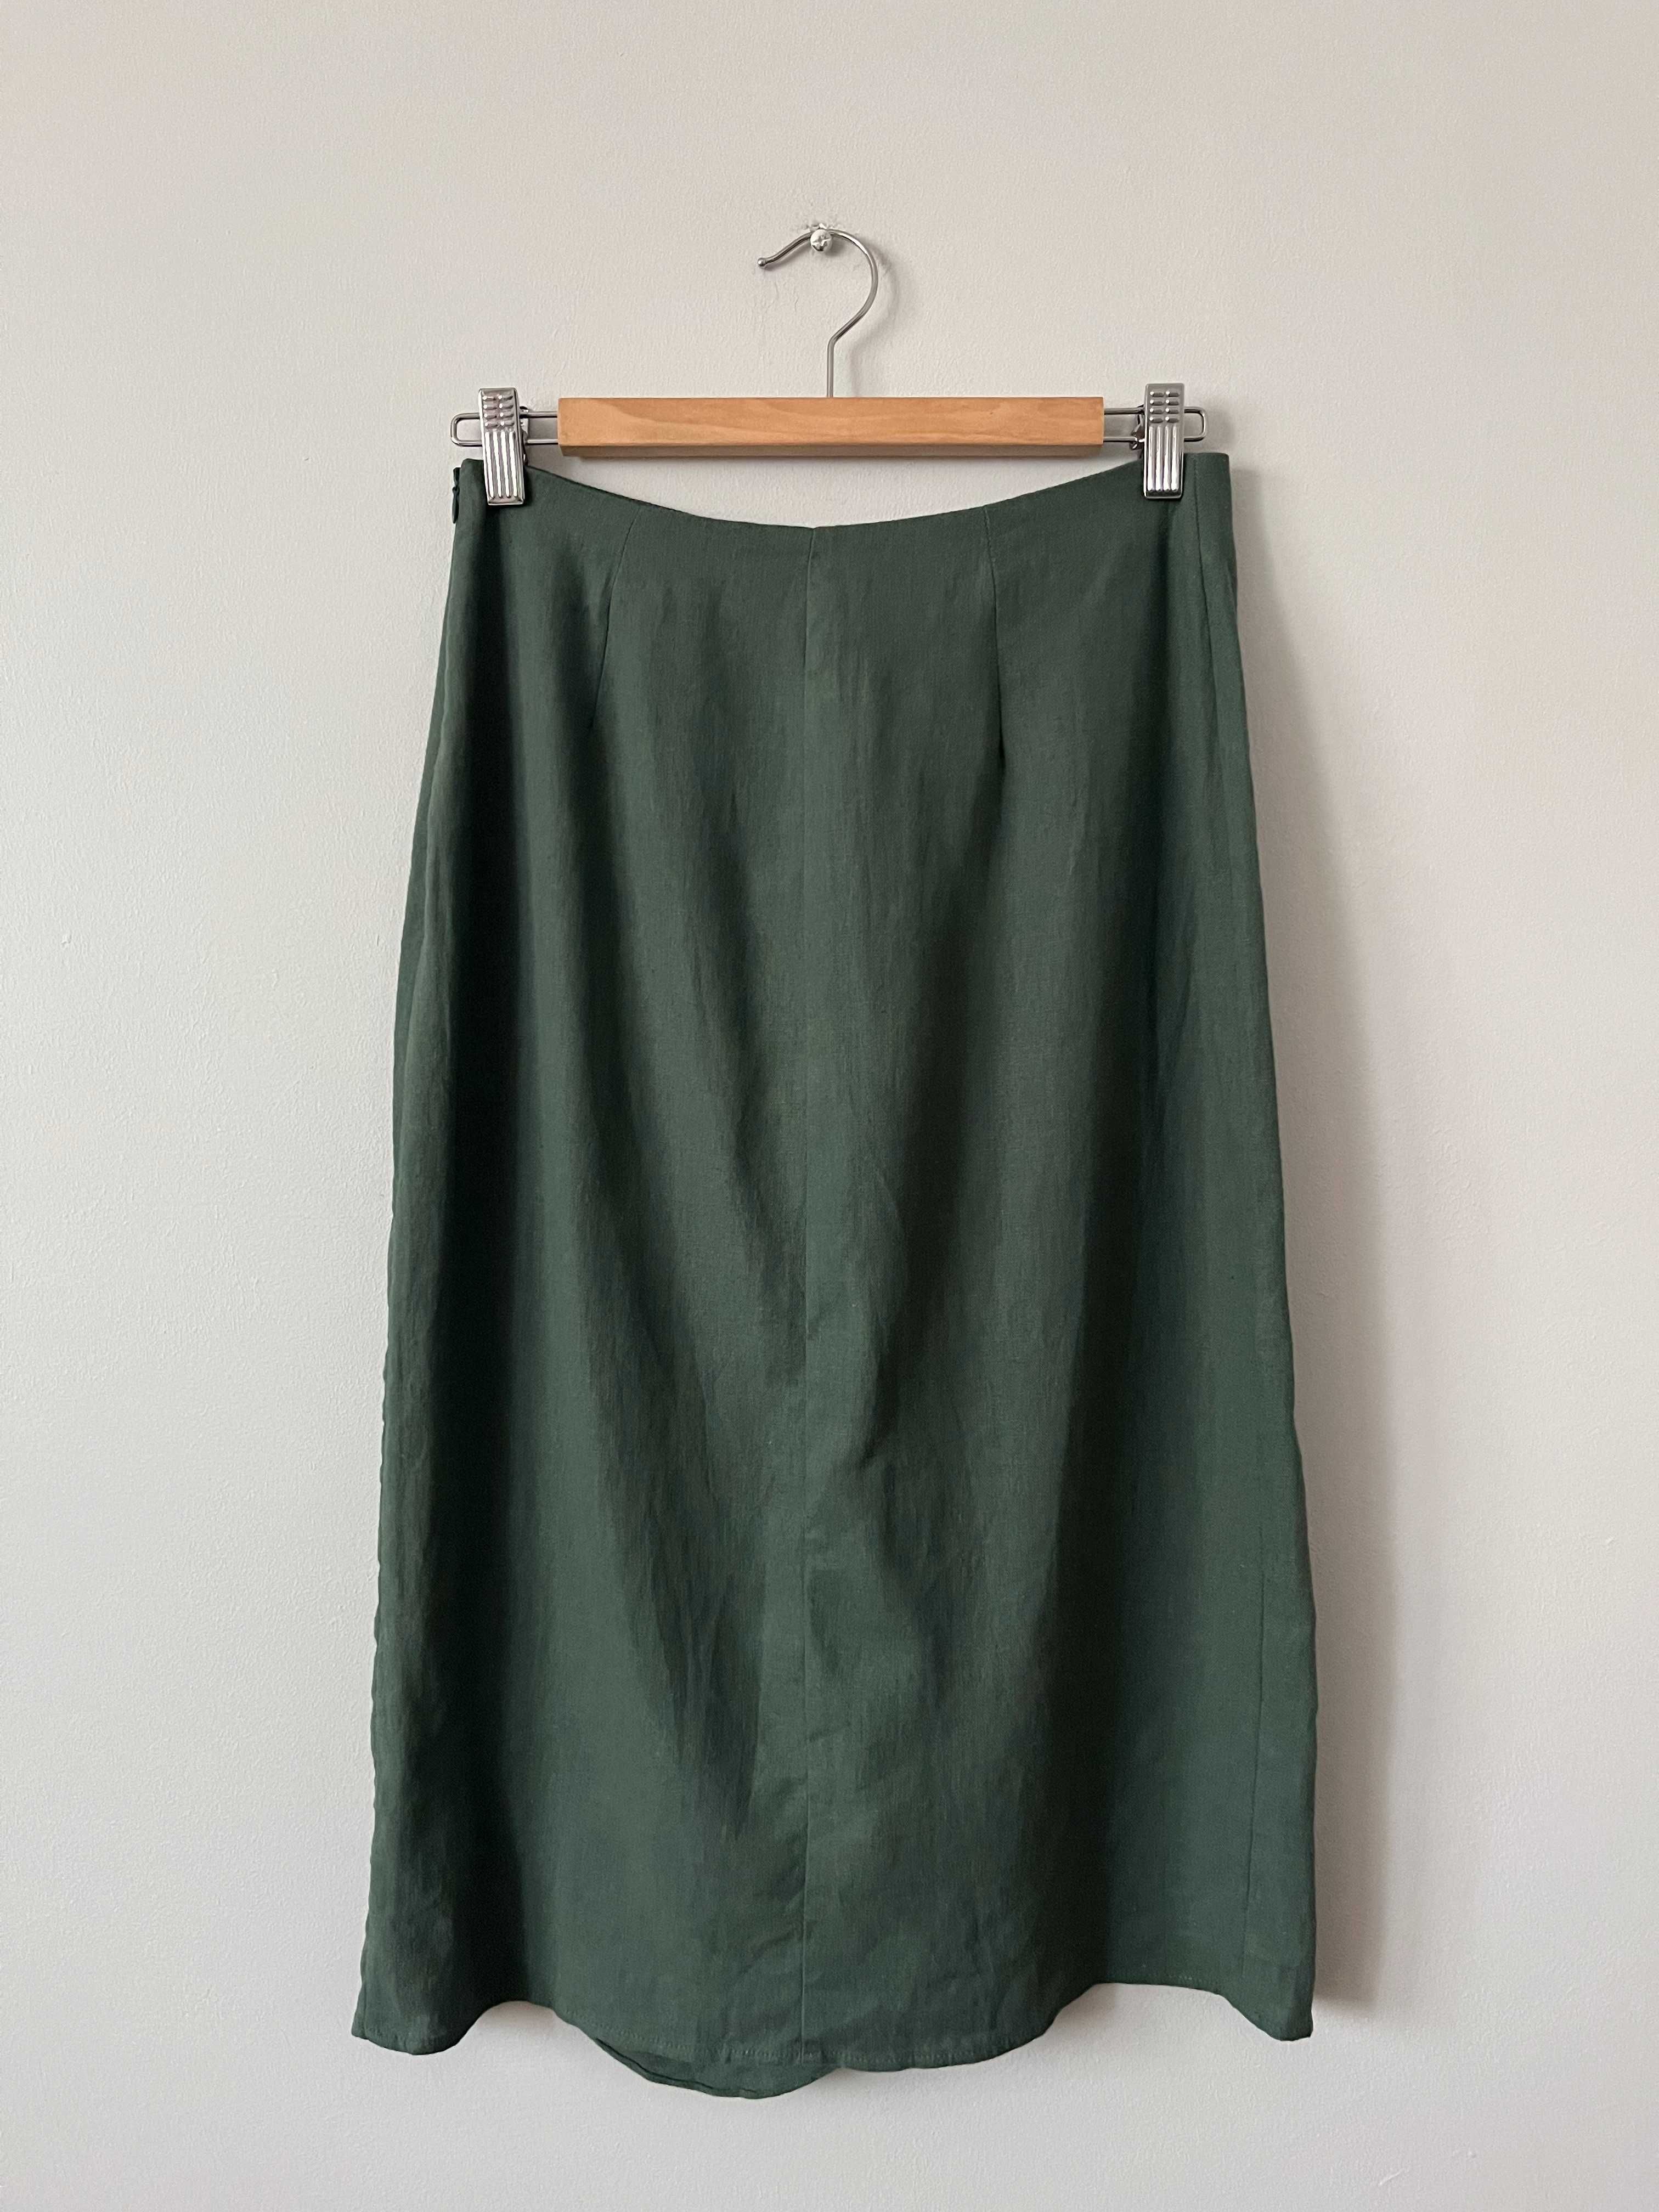 Spódnica Zara rozmiar S